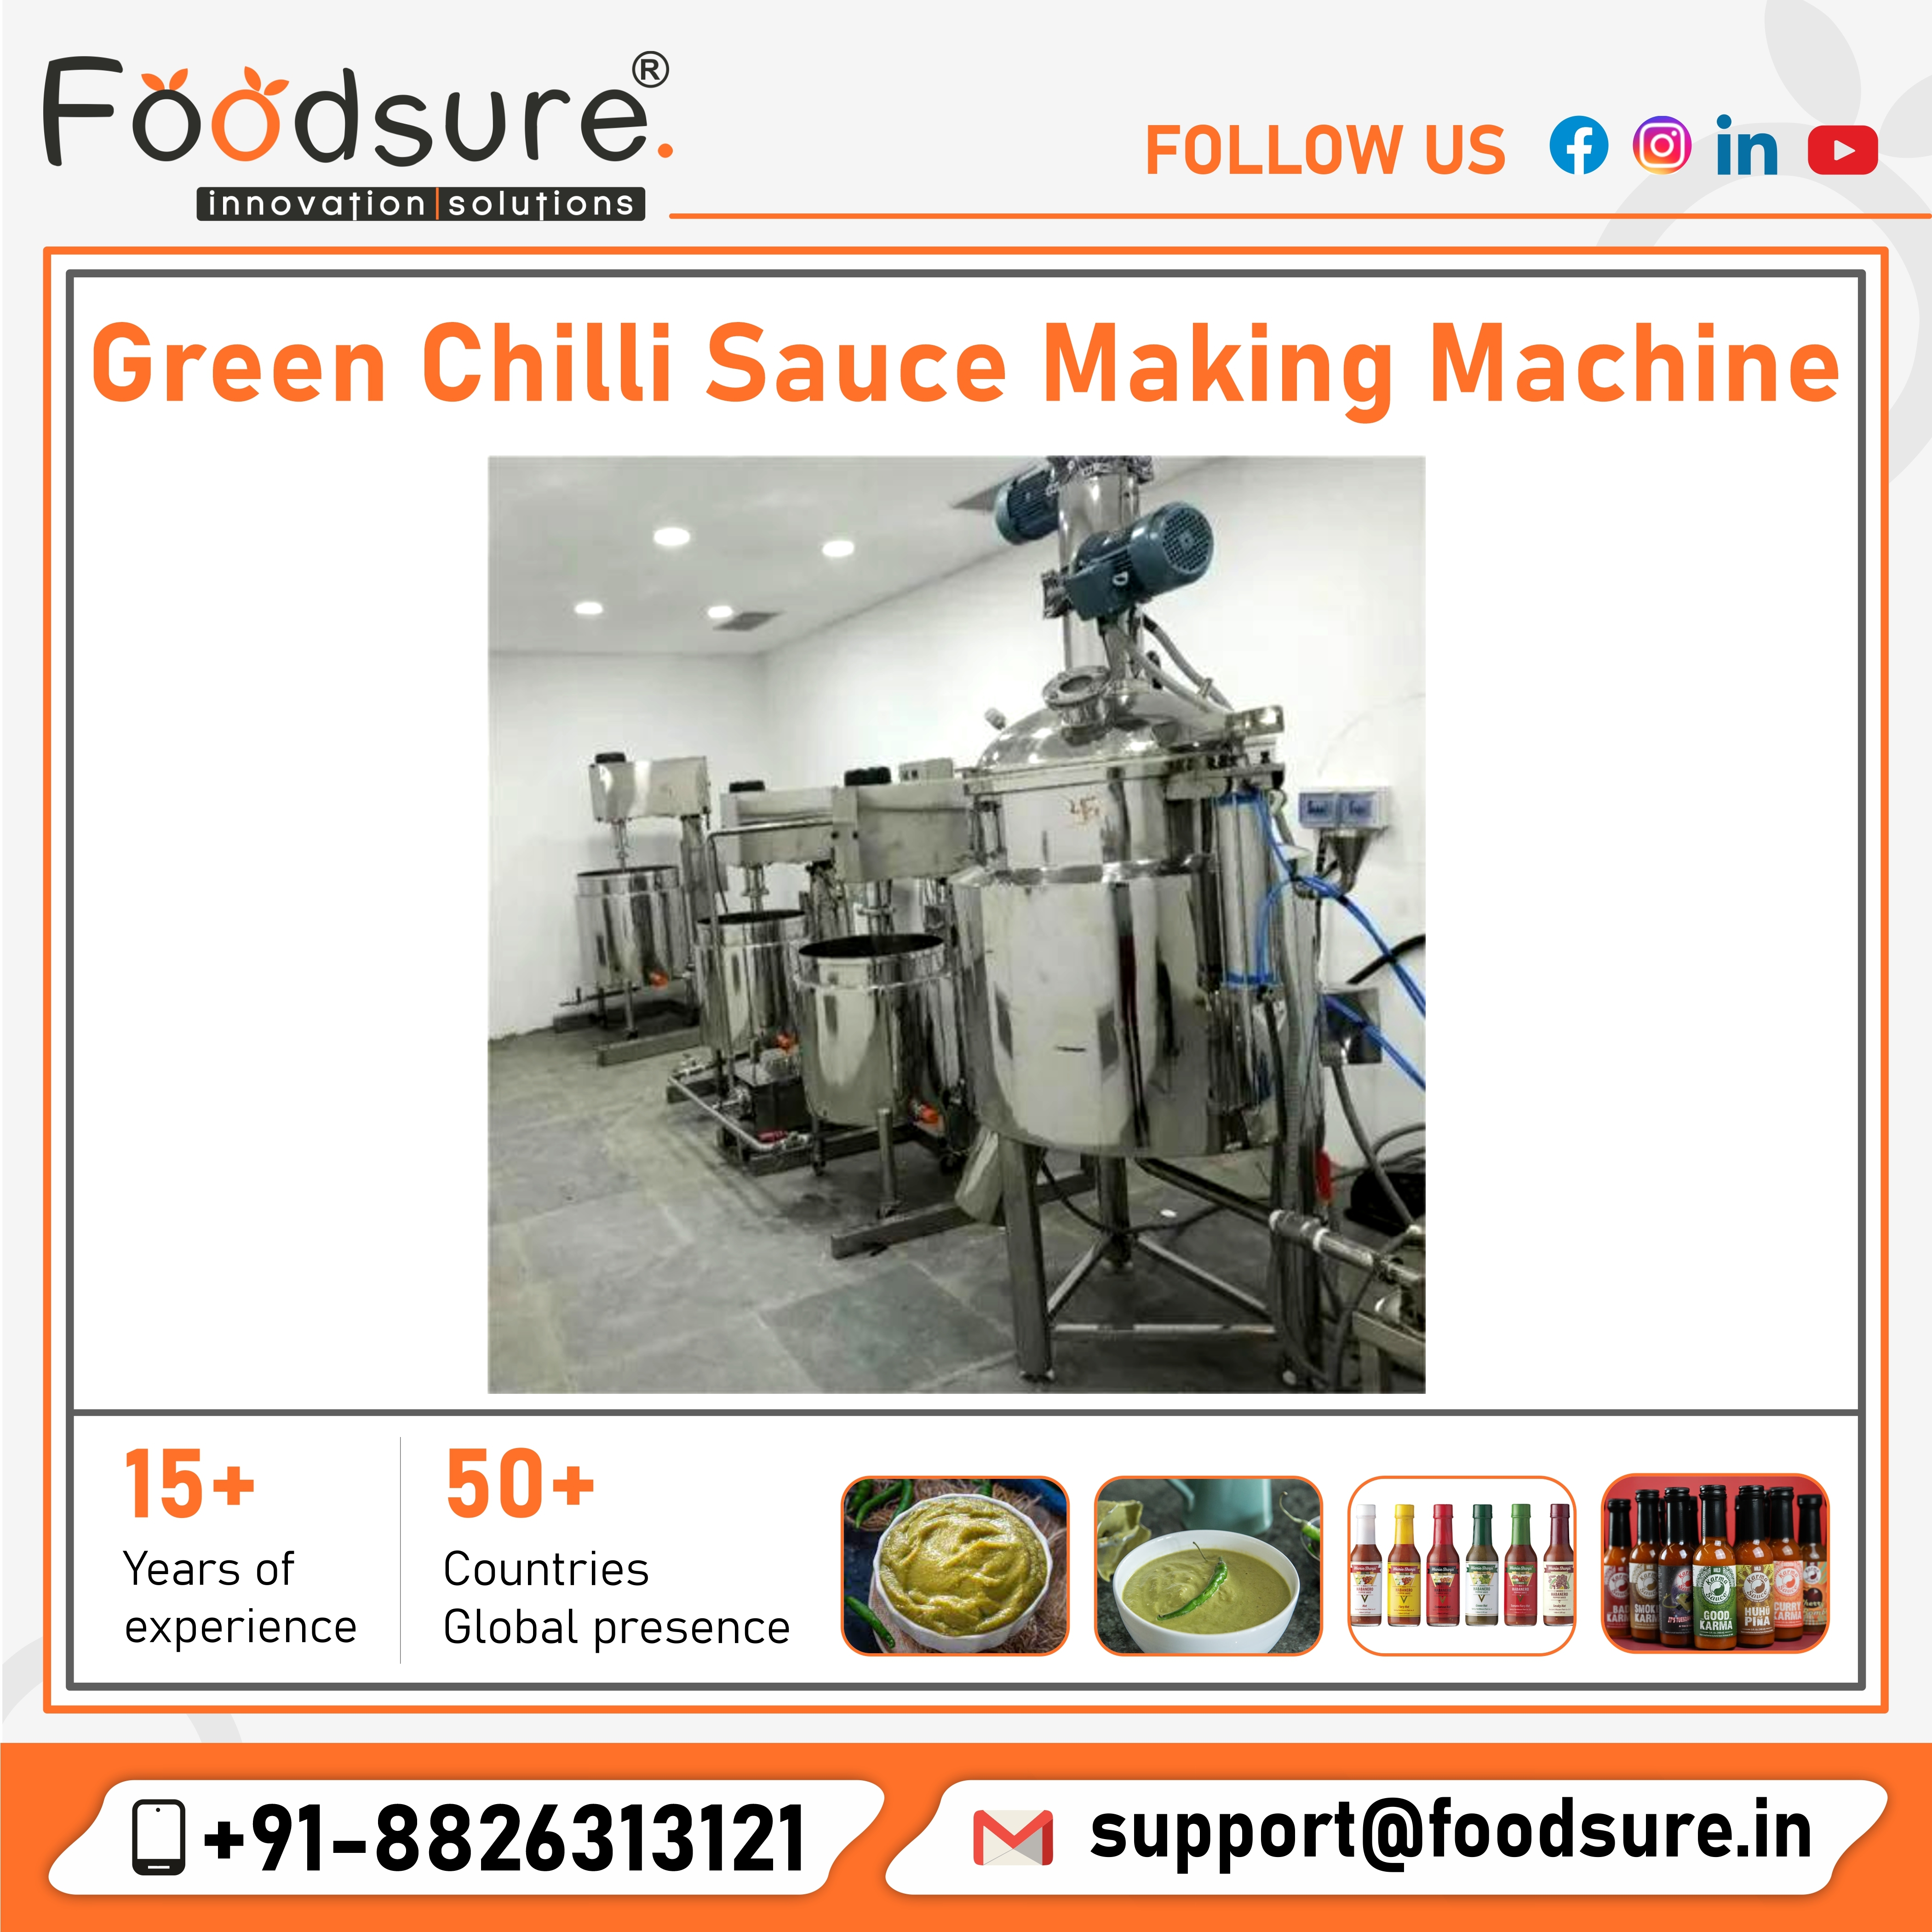 Green Chilli Sauce Making Machine